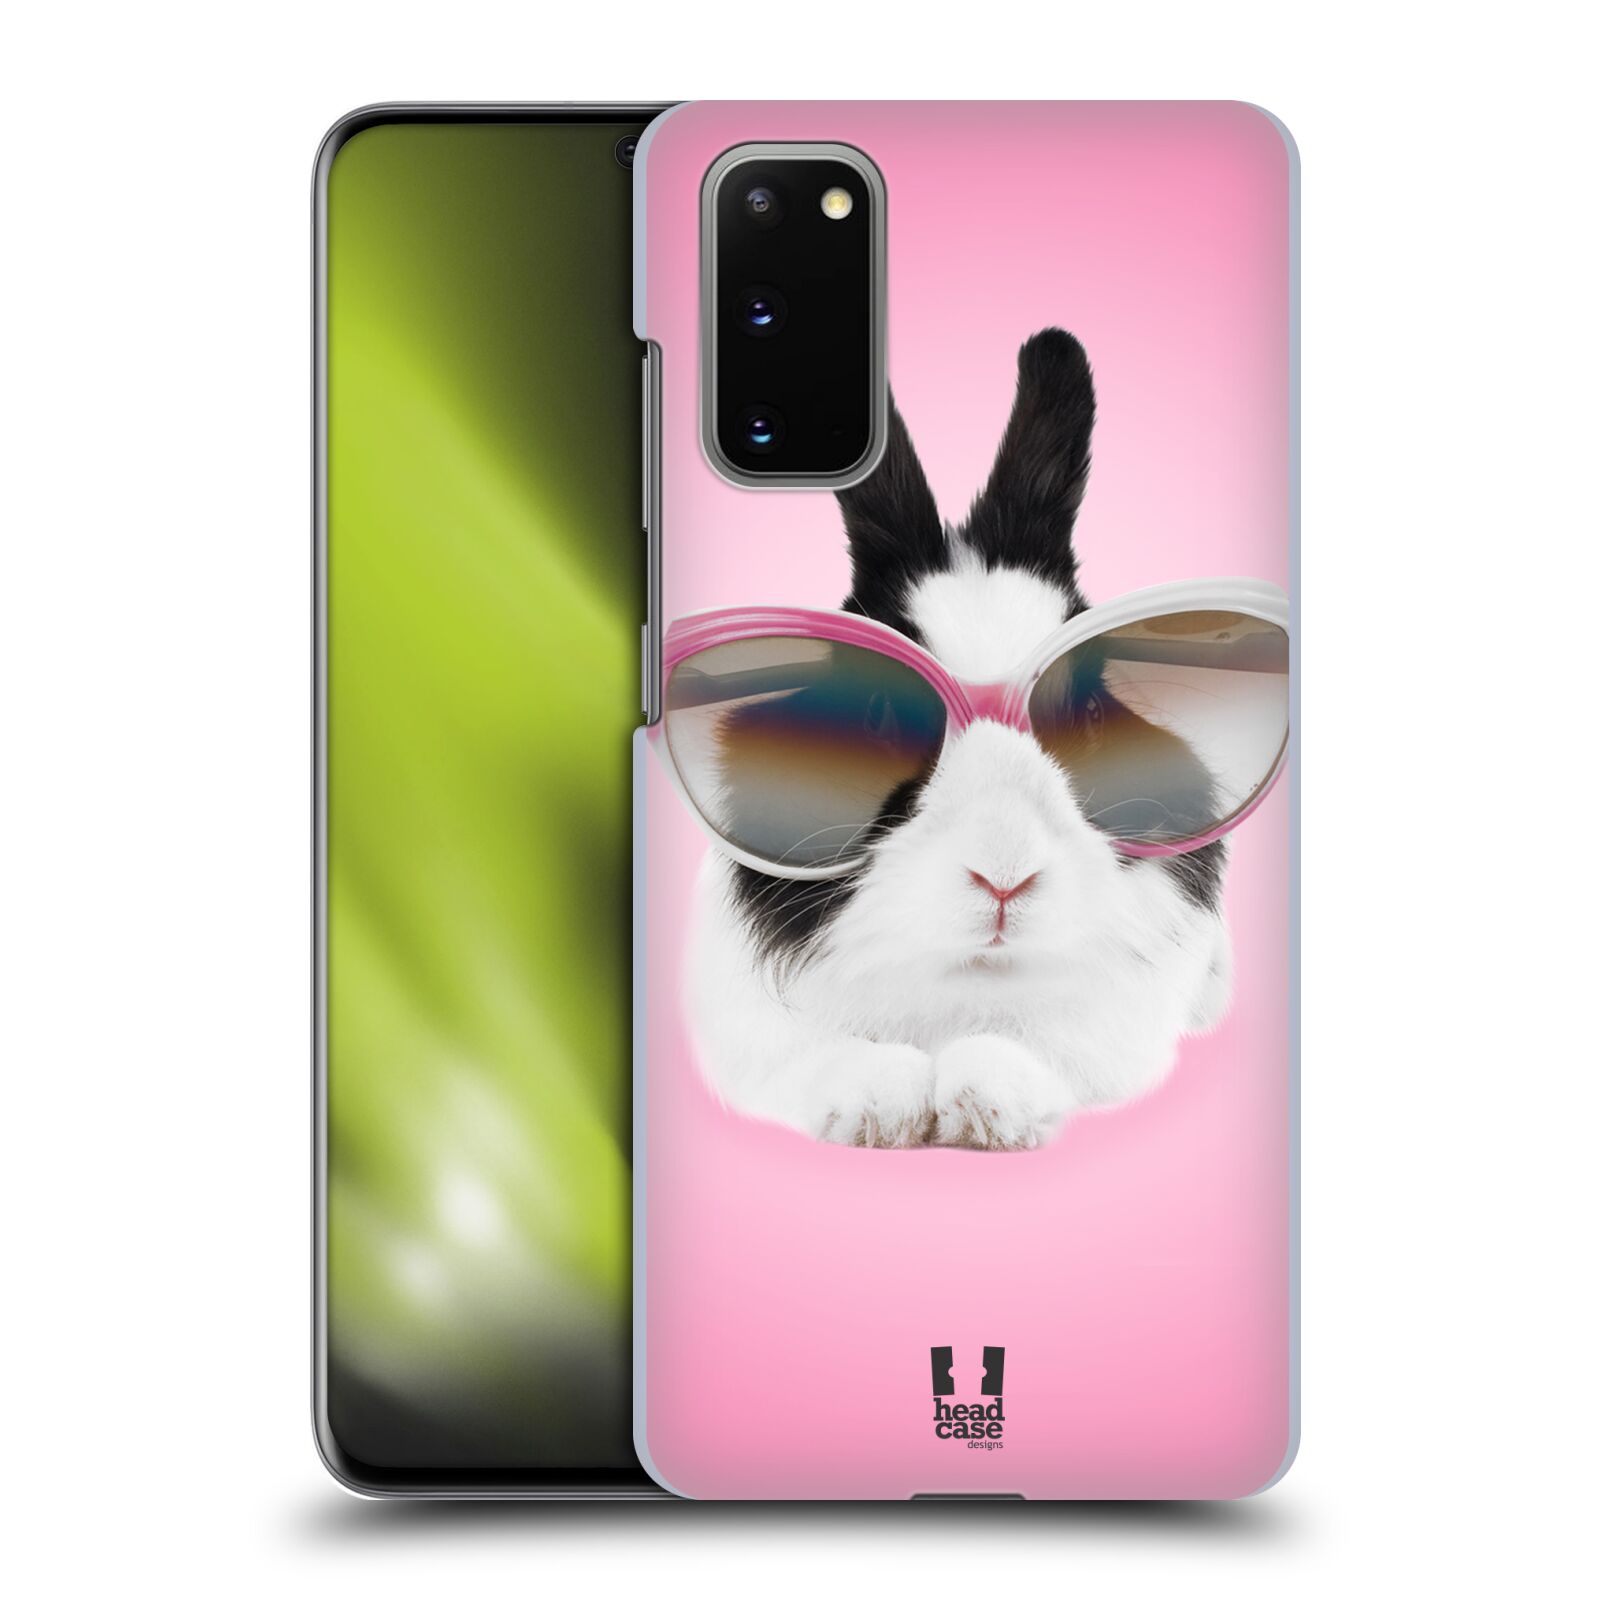 Pouzdro na mobil Samsung Galaxy S20 - HEAD CASE - vzor Legrační zvířátka roztomilý králíček s brýlemi růžová